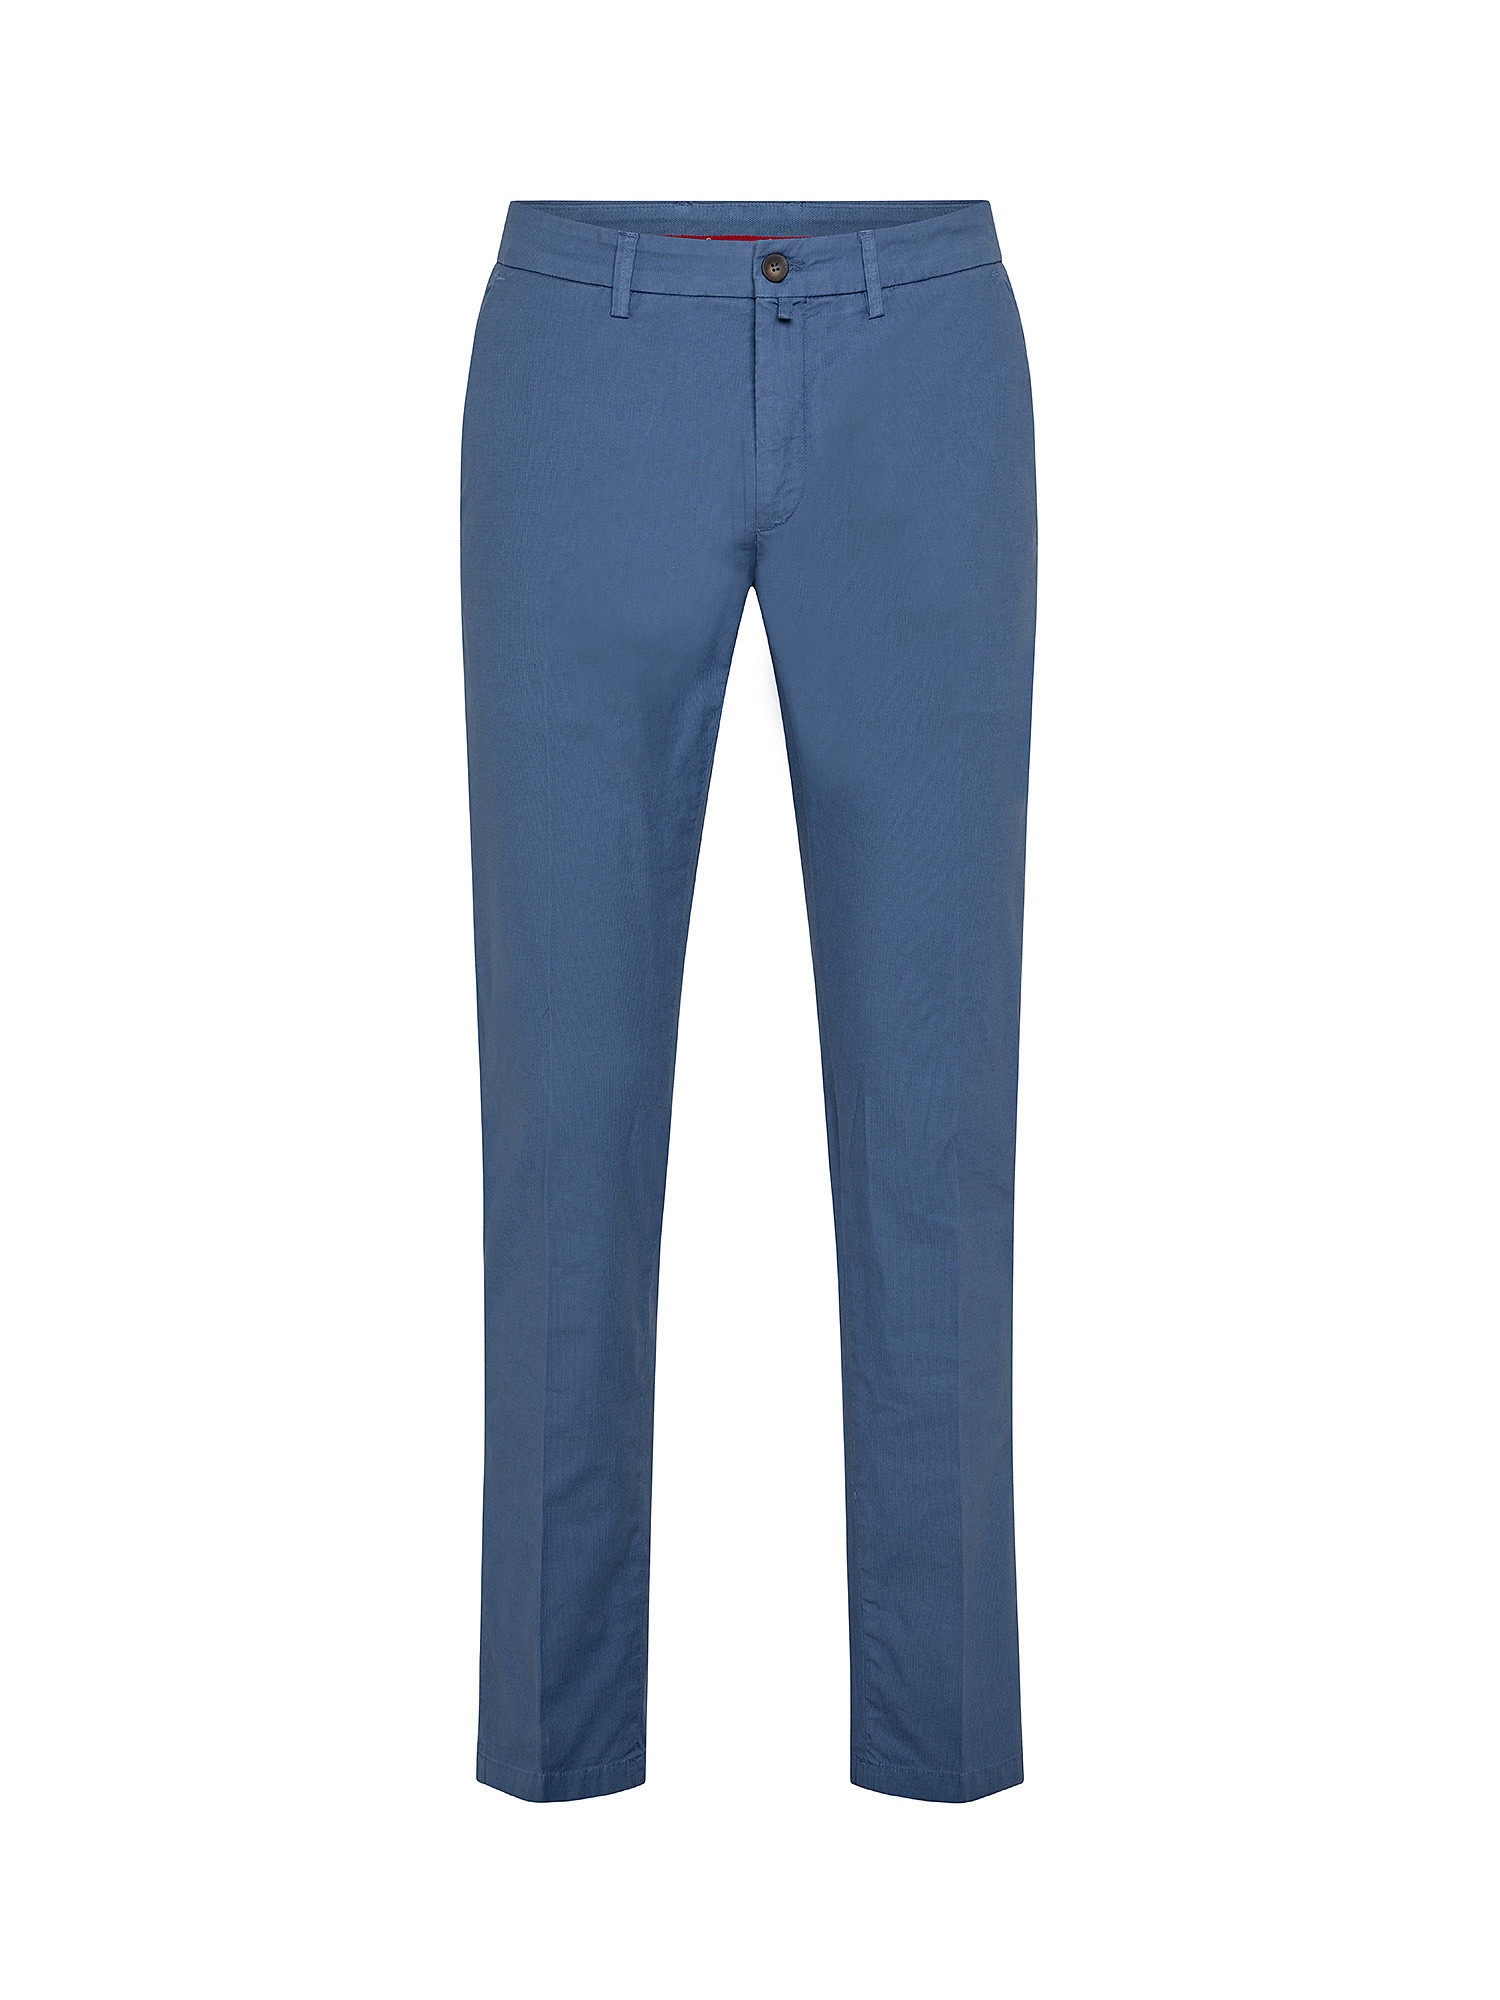 Pantalone chino, Blu, large image number 0